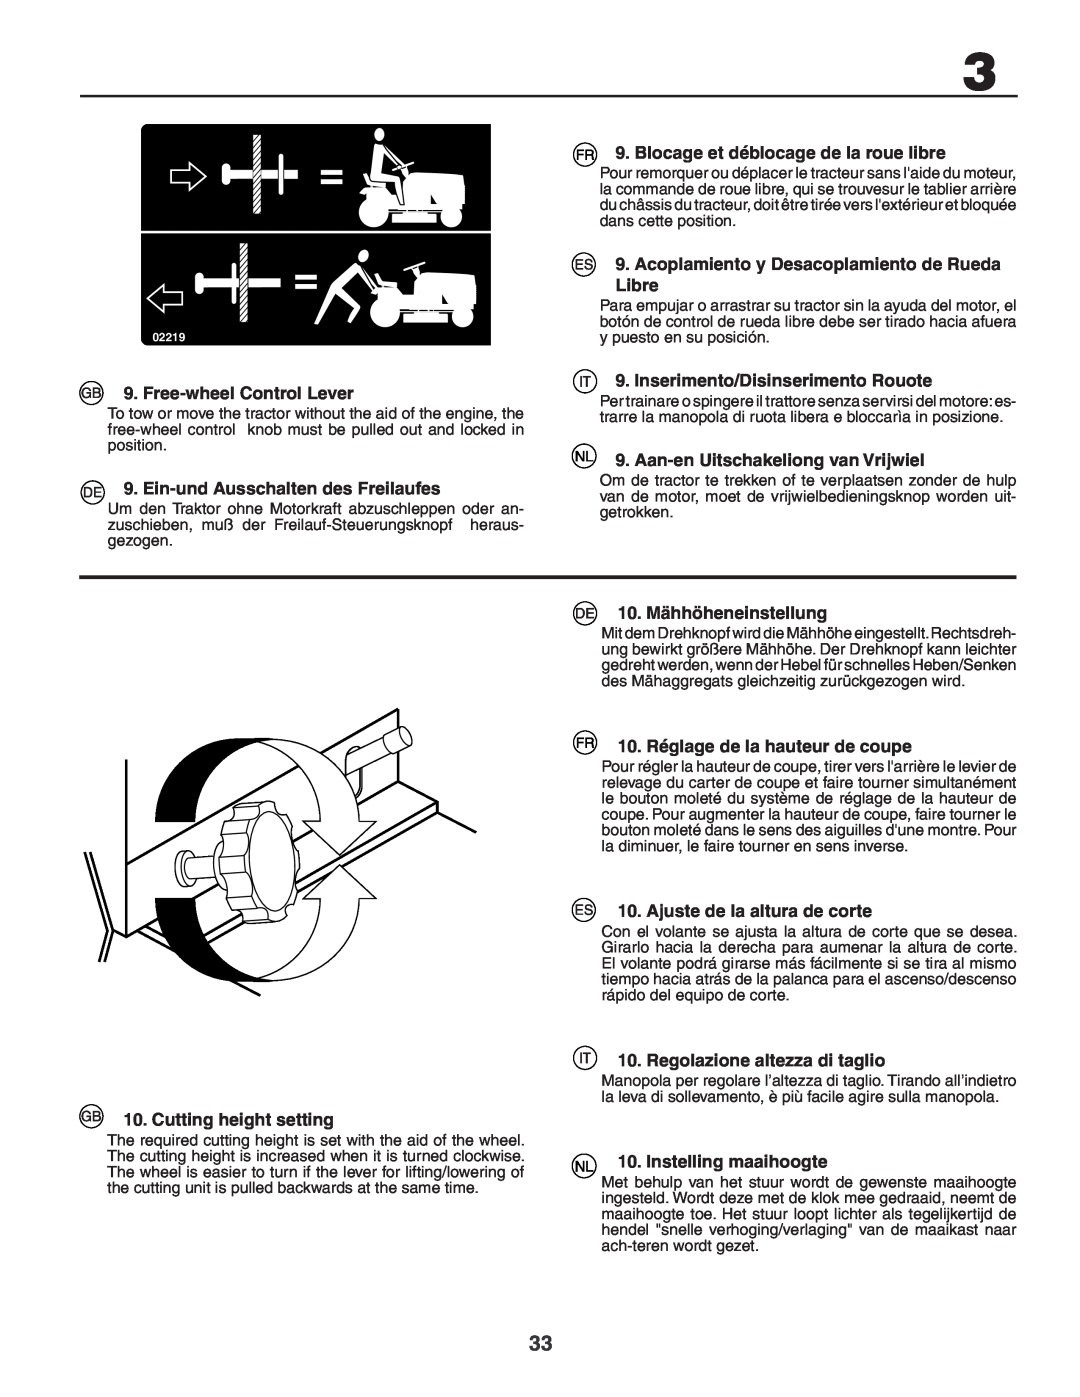 Husqvarna YTH180XP instruction manual Blocage et déblocage de la roue libre, Acoplamiento y Desacoplamiento de Rueda Libre 